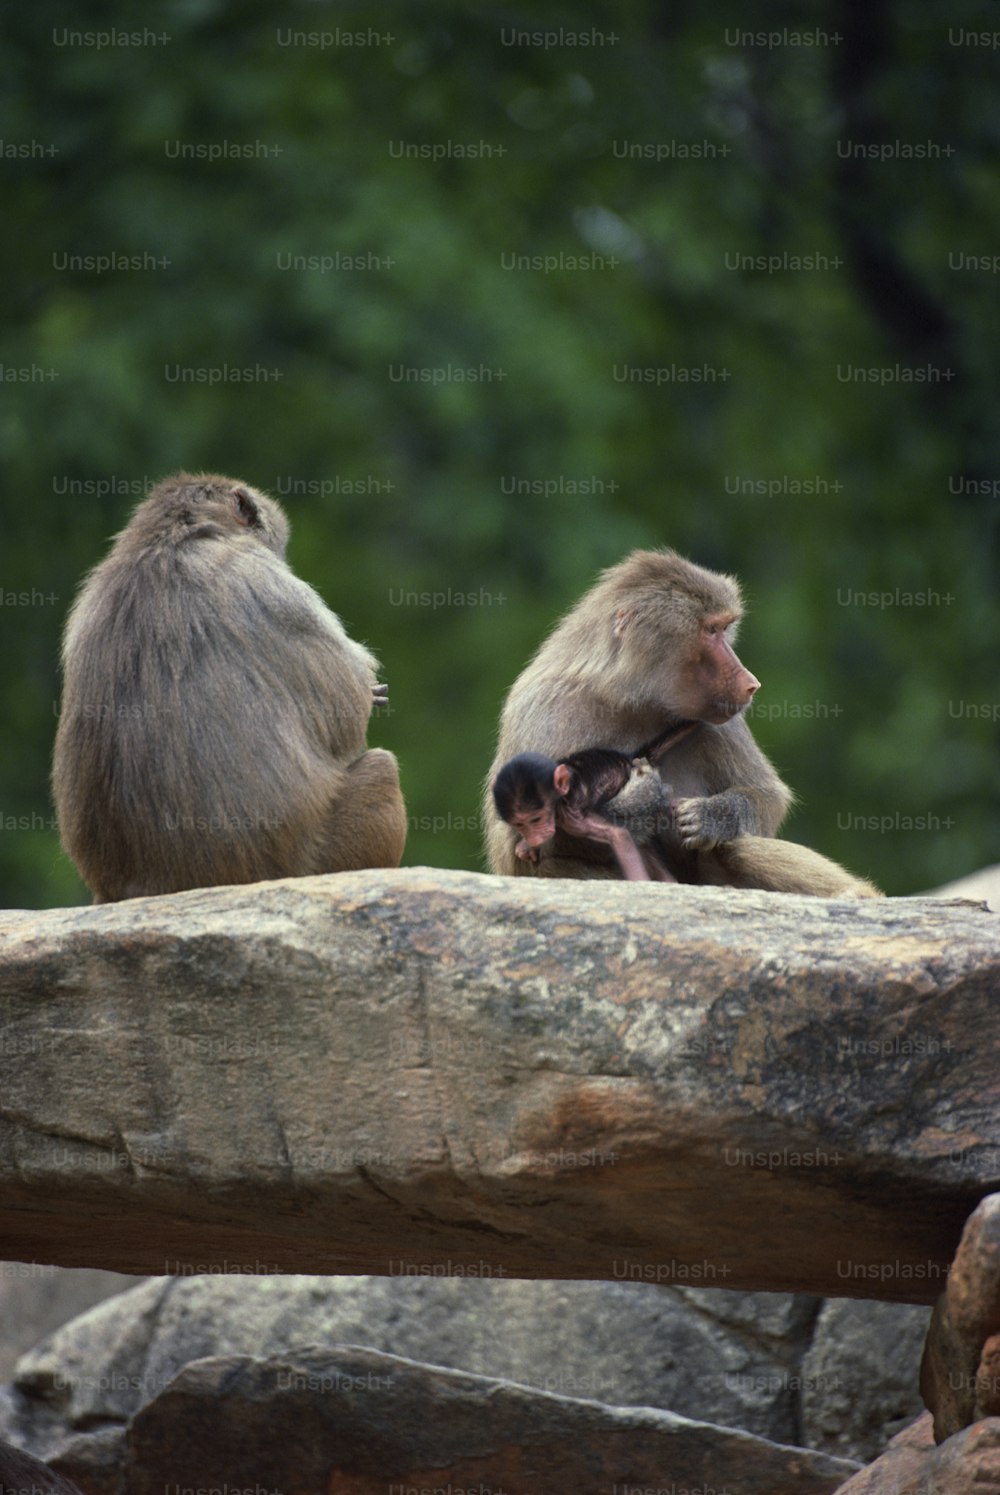 바위 위에 앉아 있는 원숭이 두 마리